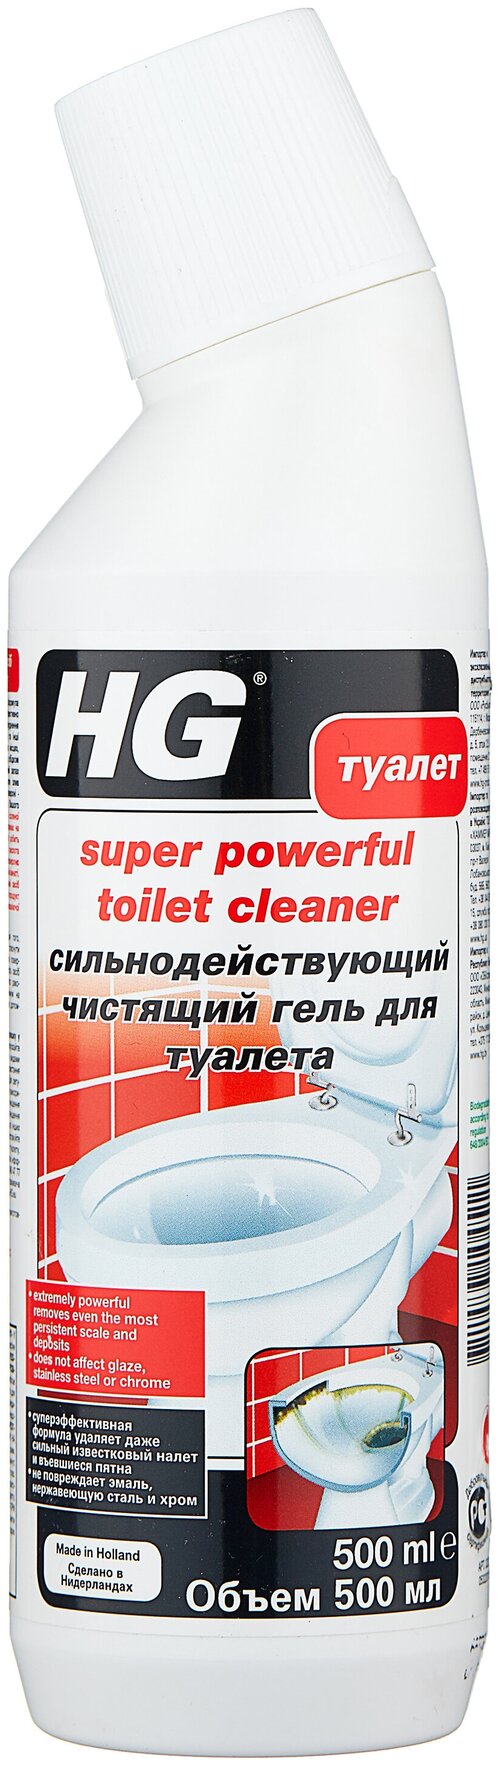 Сильнодействующий чистящий гель для туалета HG, 500 мл, 656 г